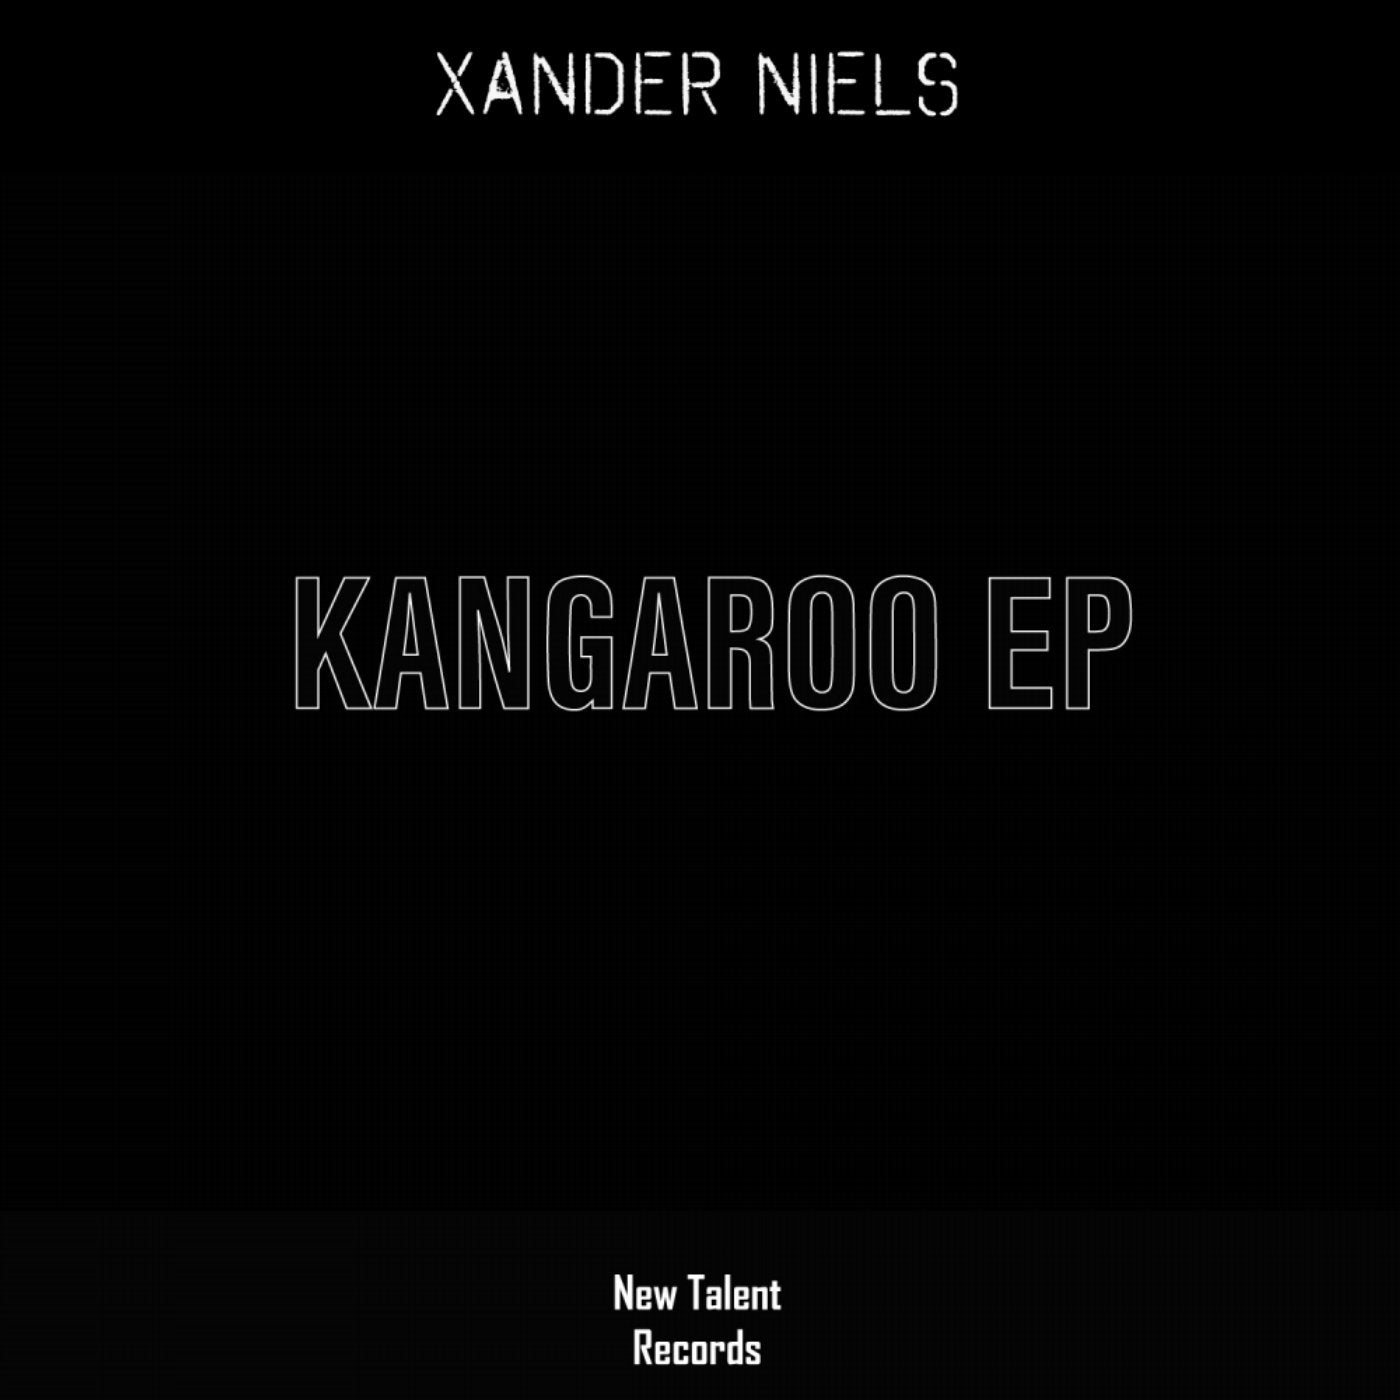 Kangaroo EP